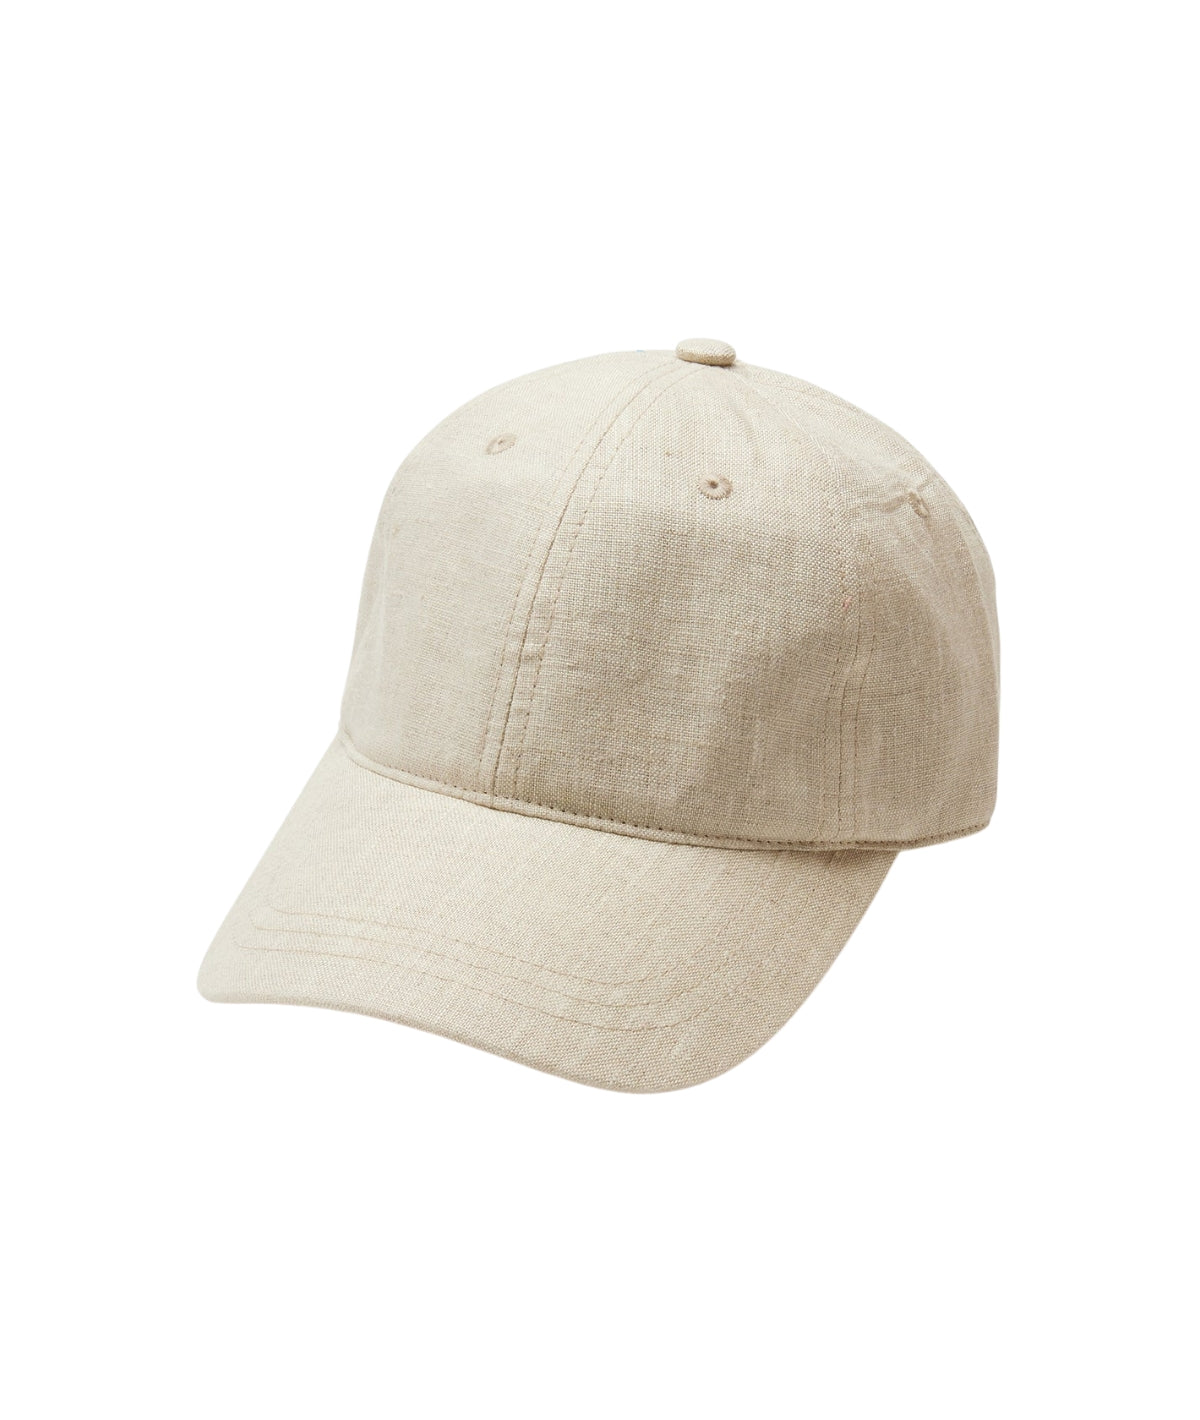 Spencer Hat- Cream